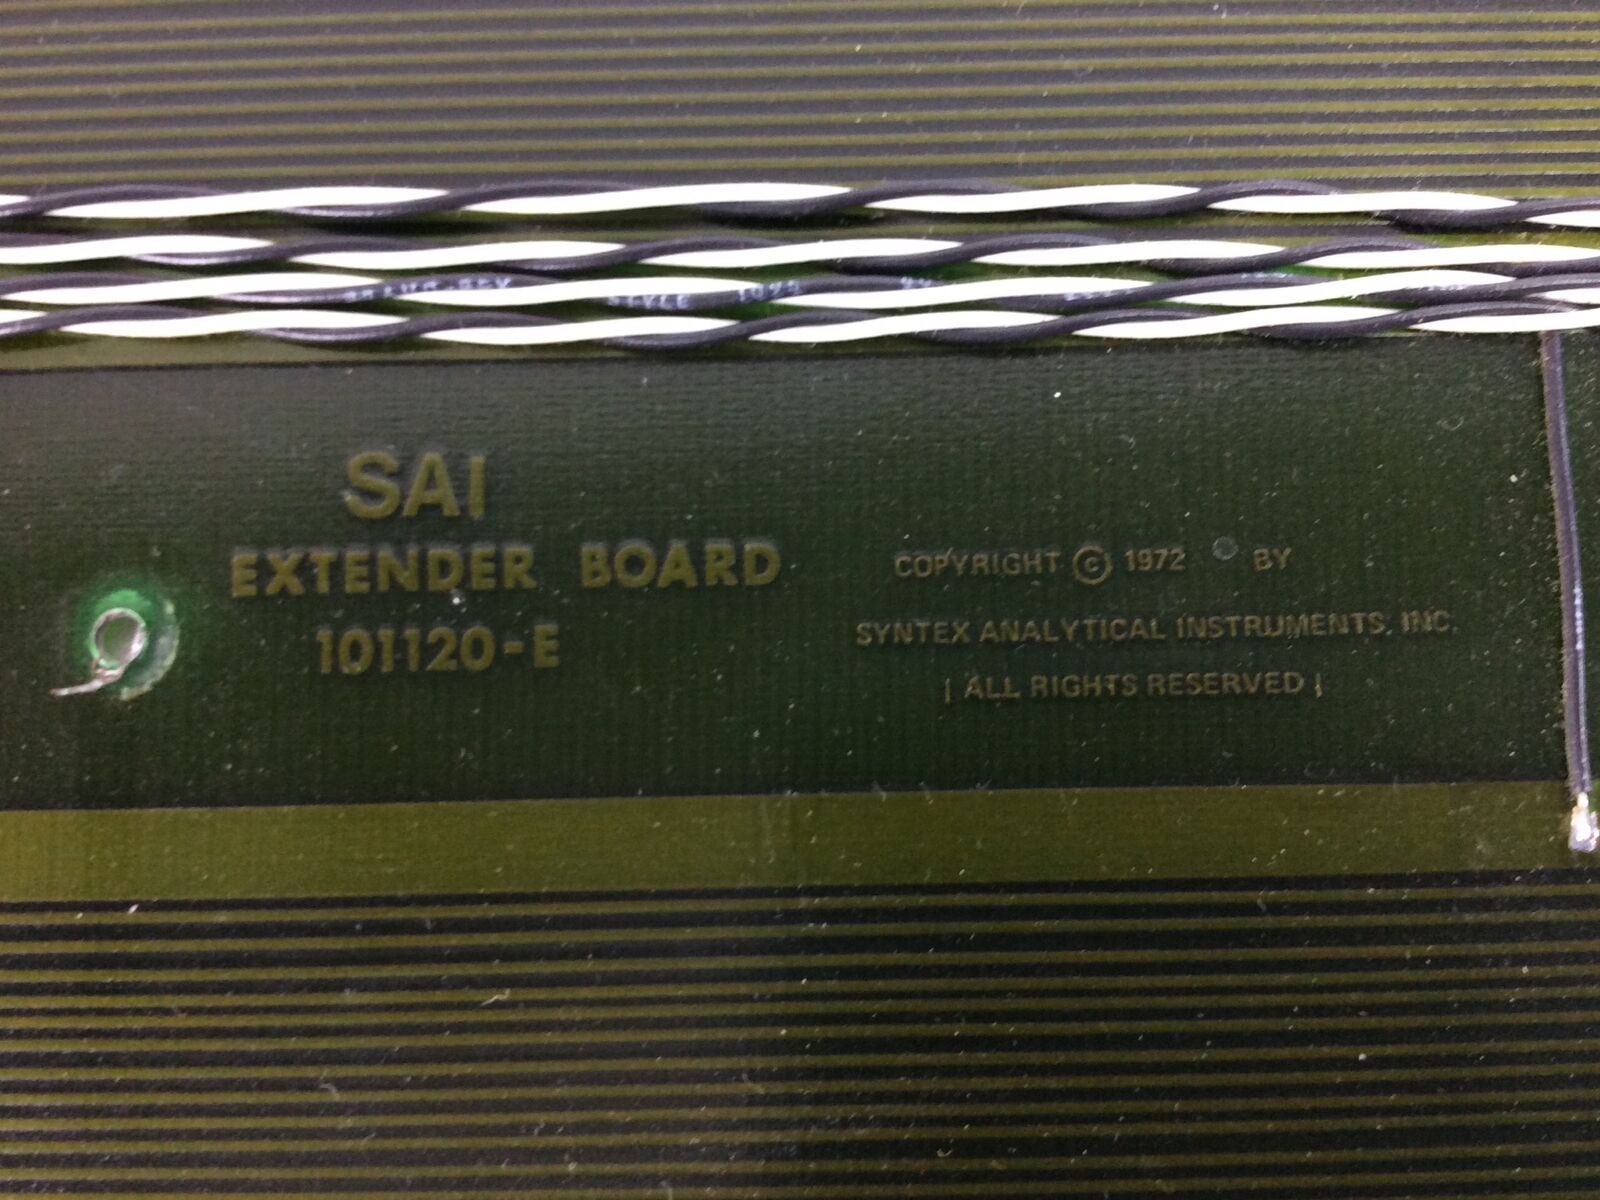 SAI Extender Board - 101157 Rev. C - 101120-E - Untested